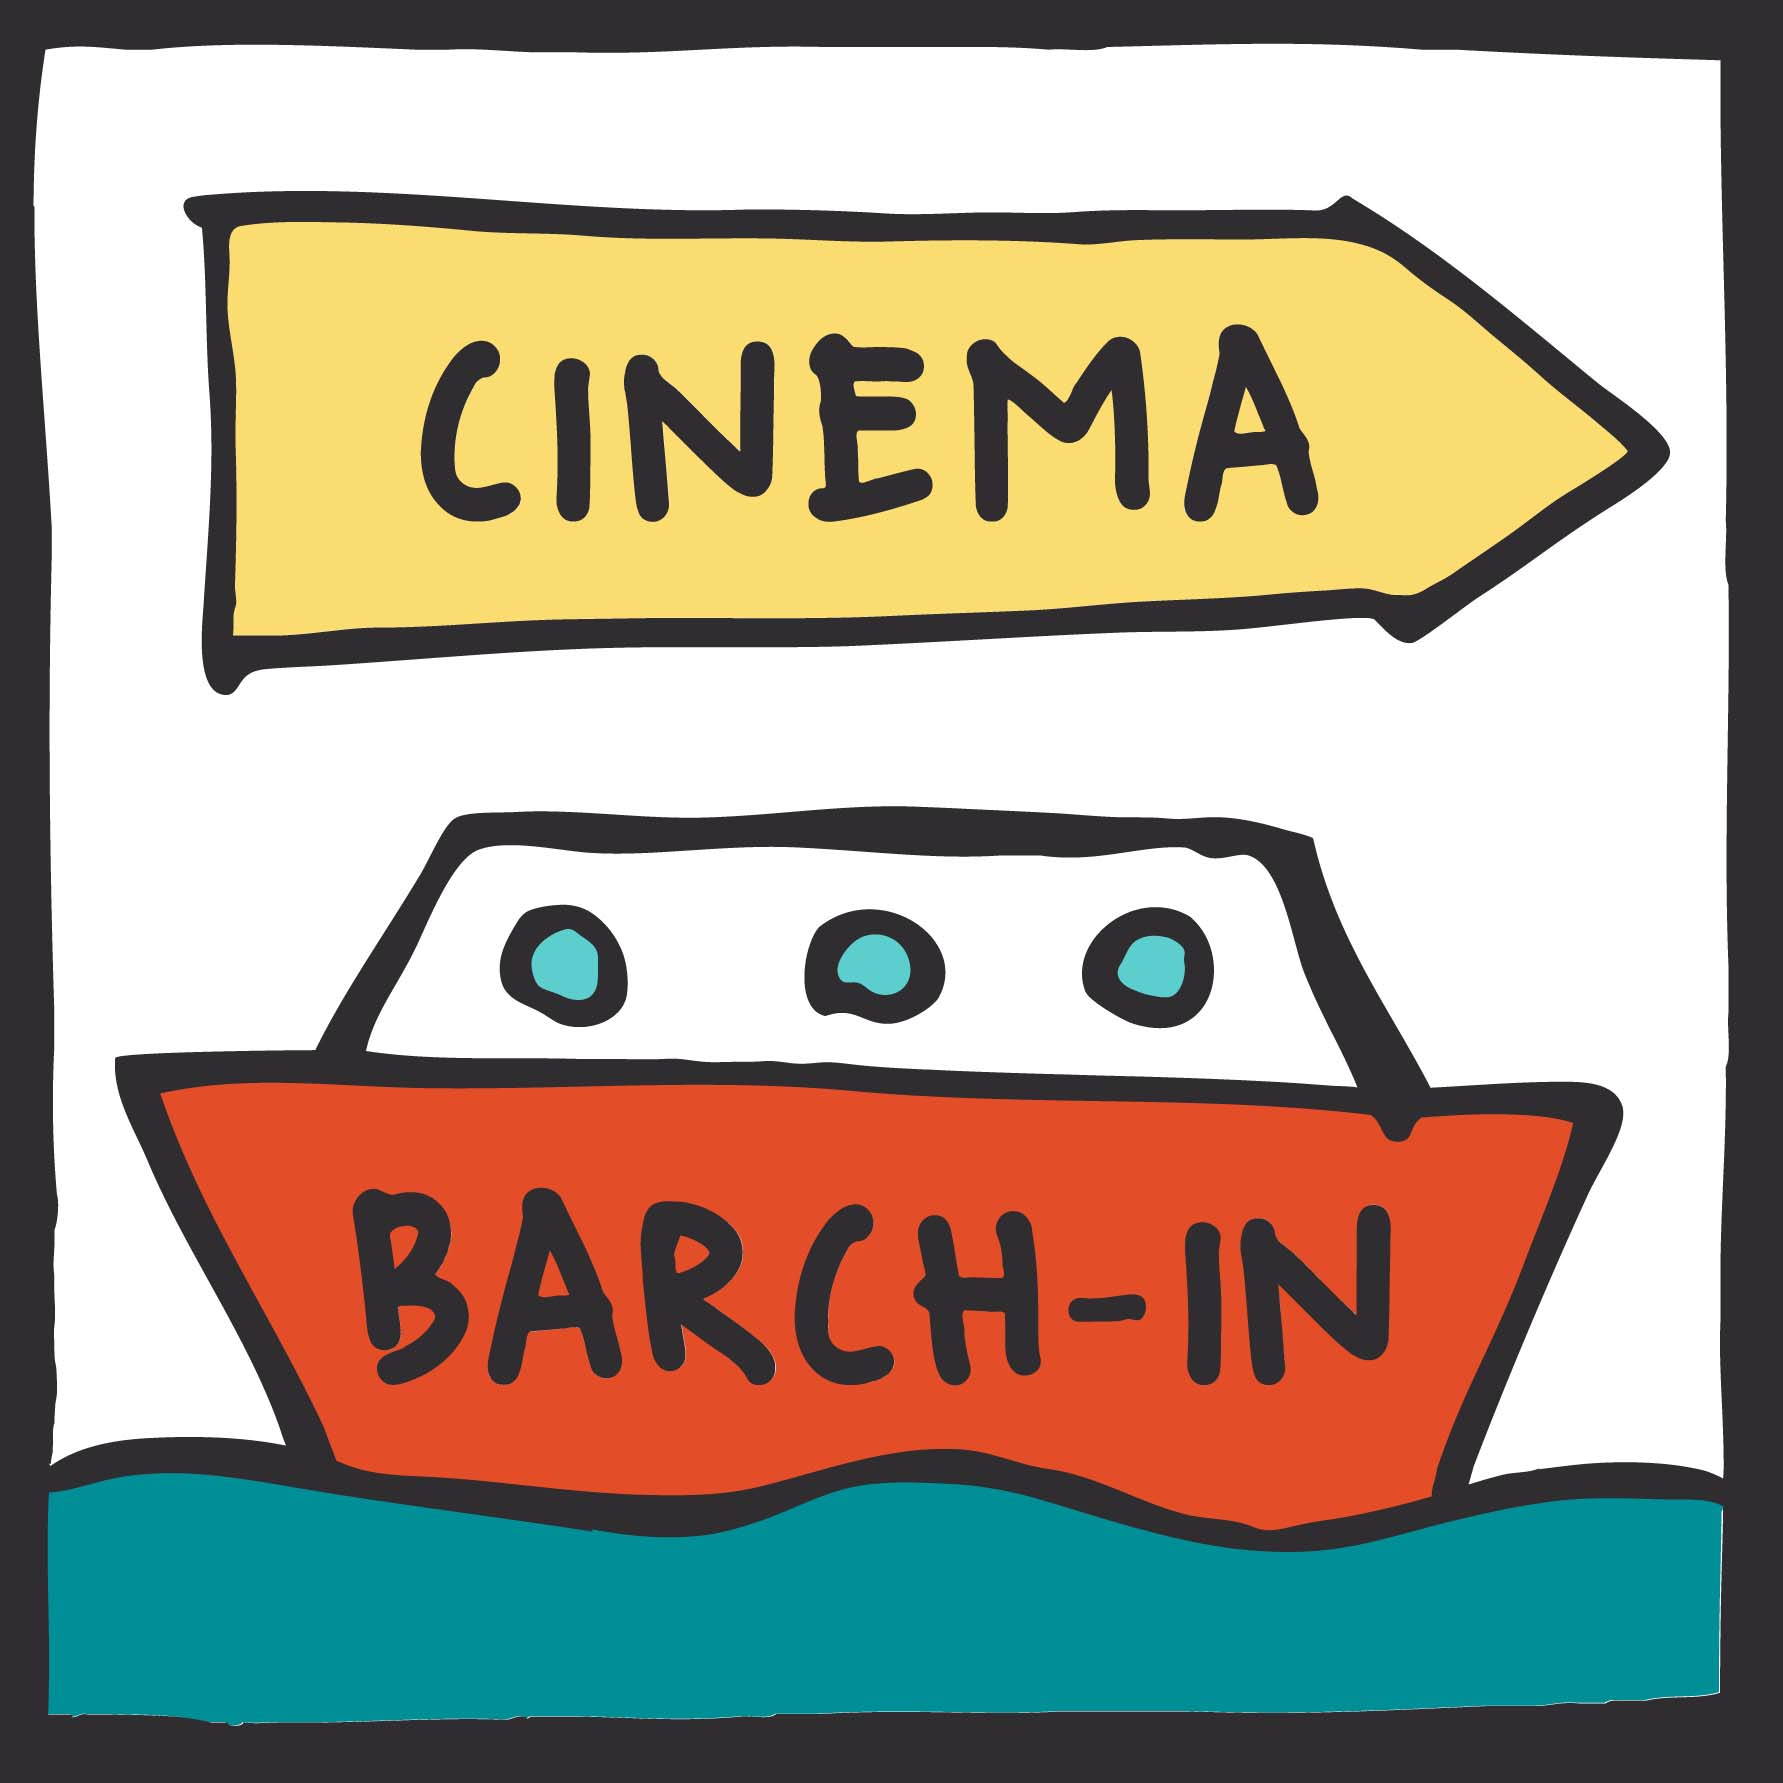 Cinema barch-in, il drive-in della Laguna